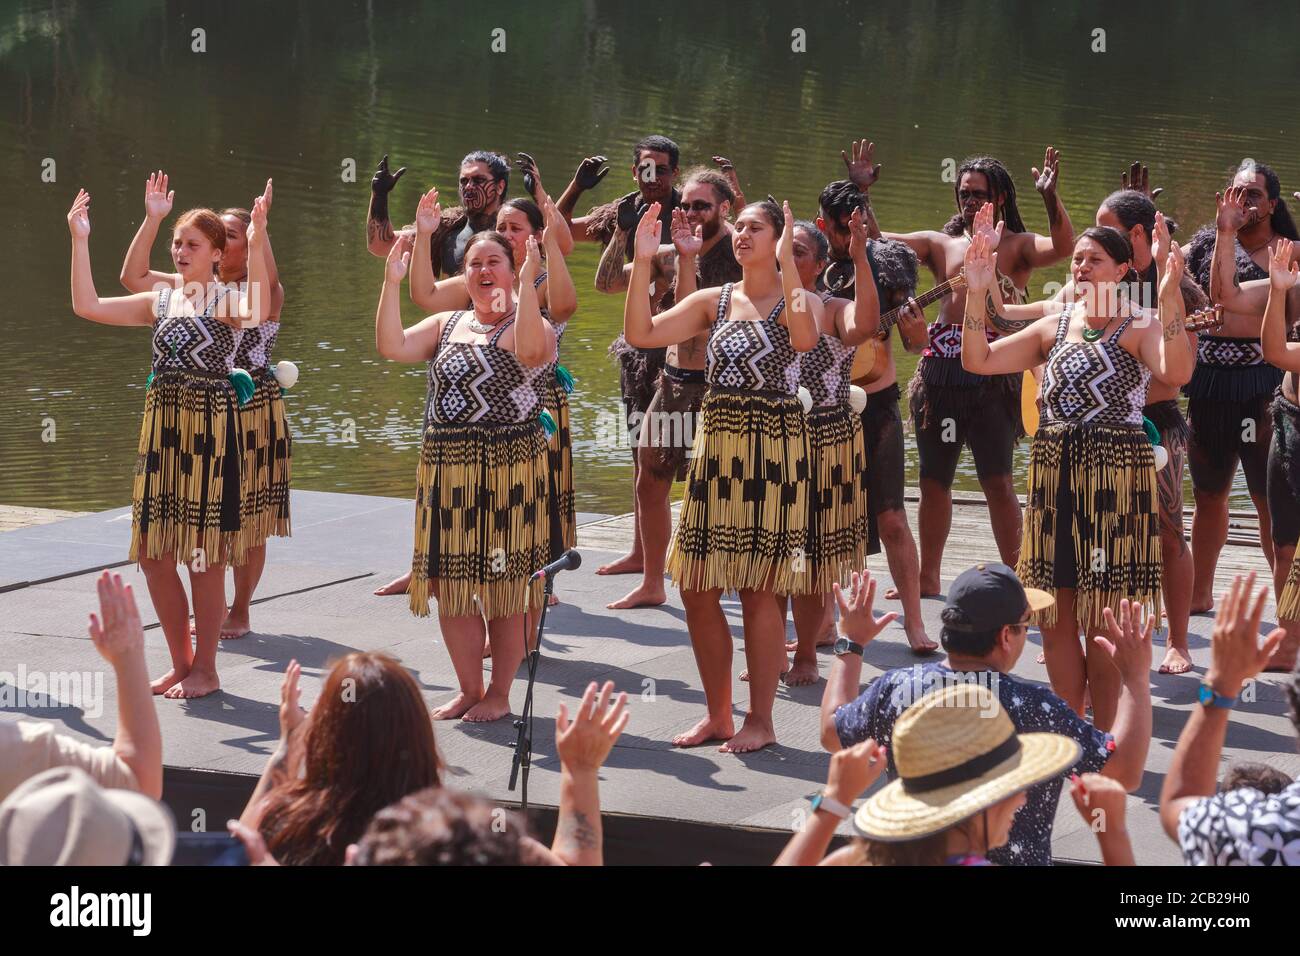 Femmes maories de Nouvelle-Zélande d'un groupe kapa haka, portant une robe traditionnelle et exécutant une waiata (chanson). Hamilton, Nouvelle-Zélande, 23 mars 2019 Banque D'Images